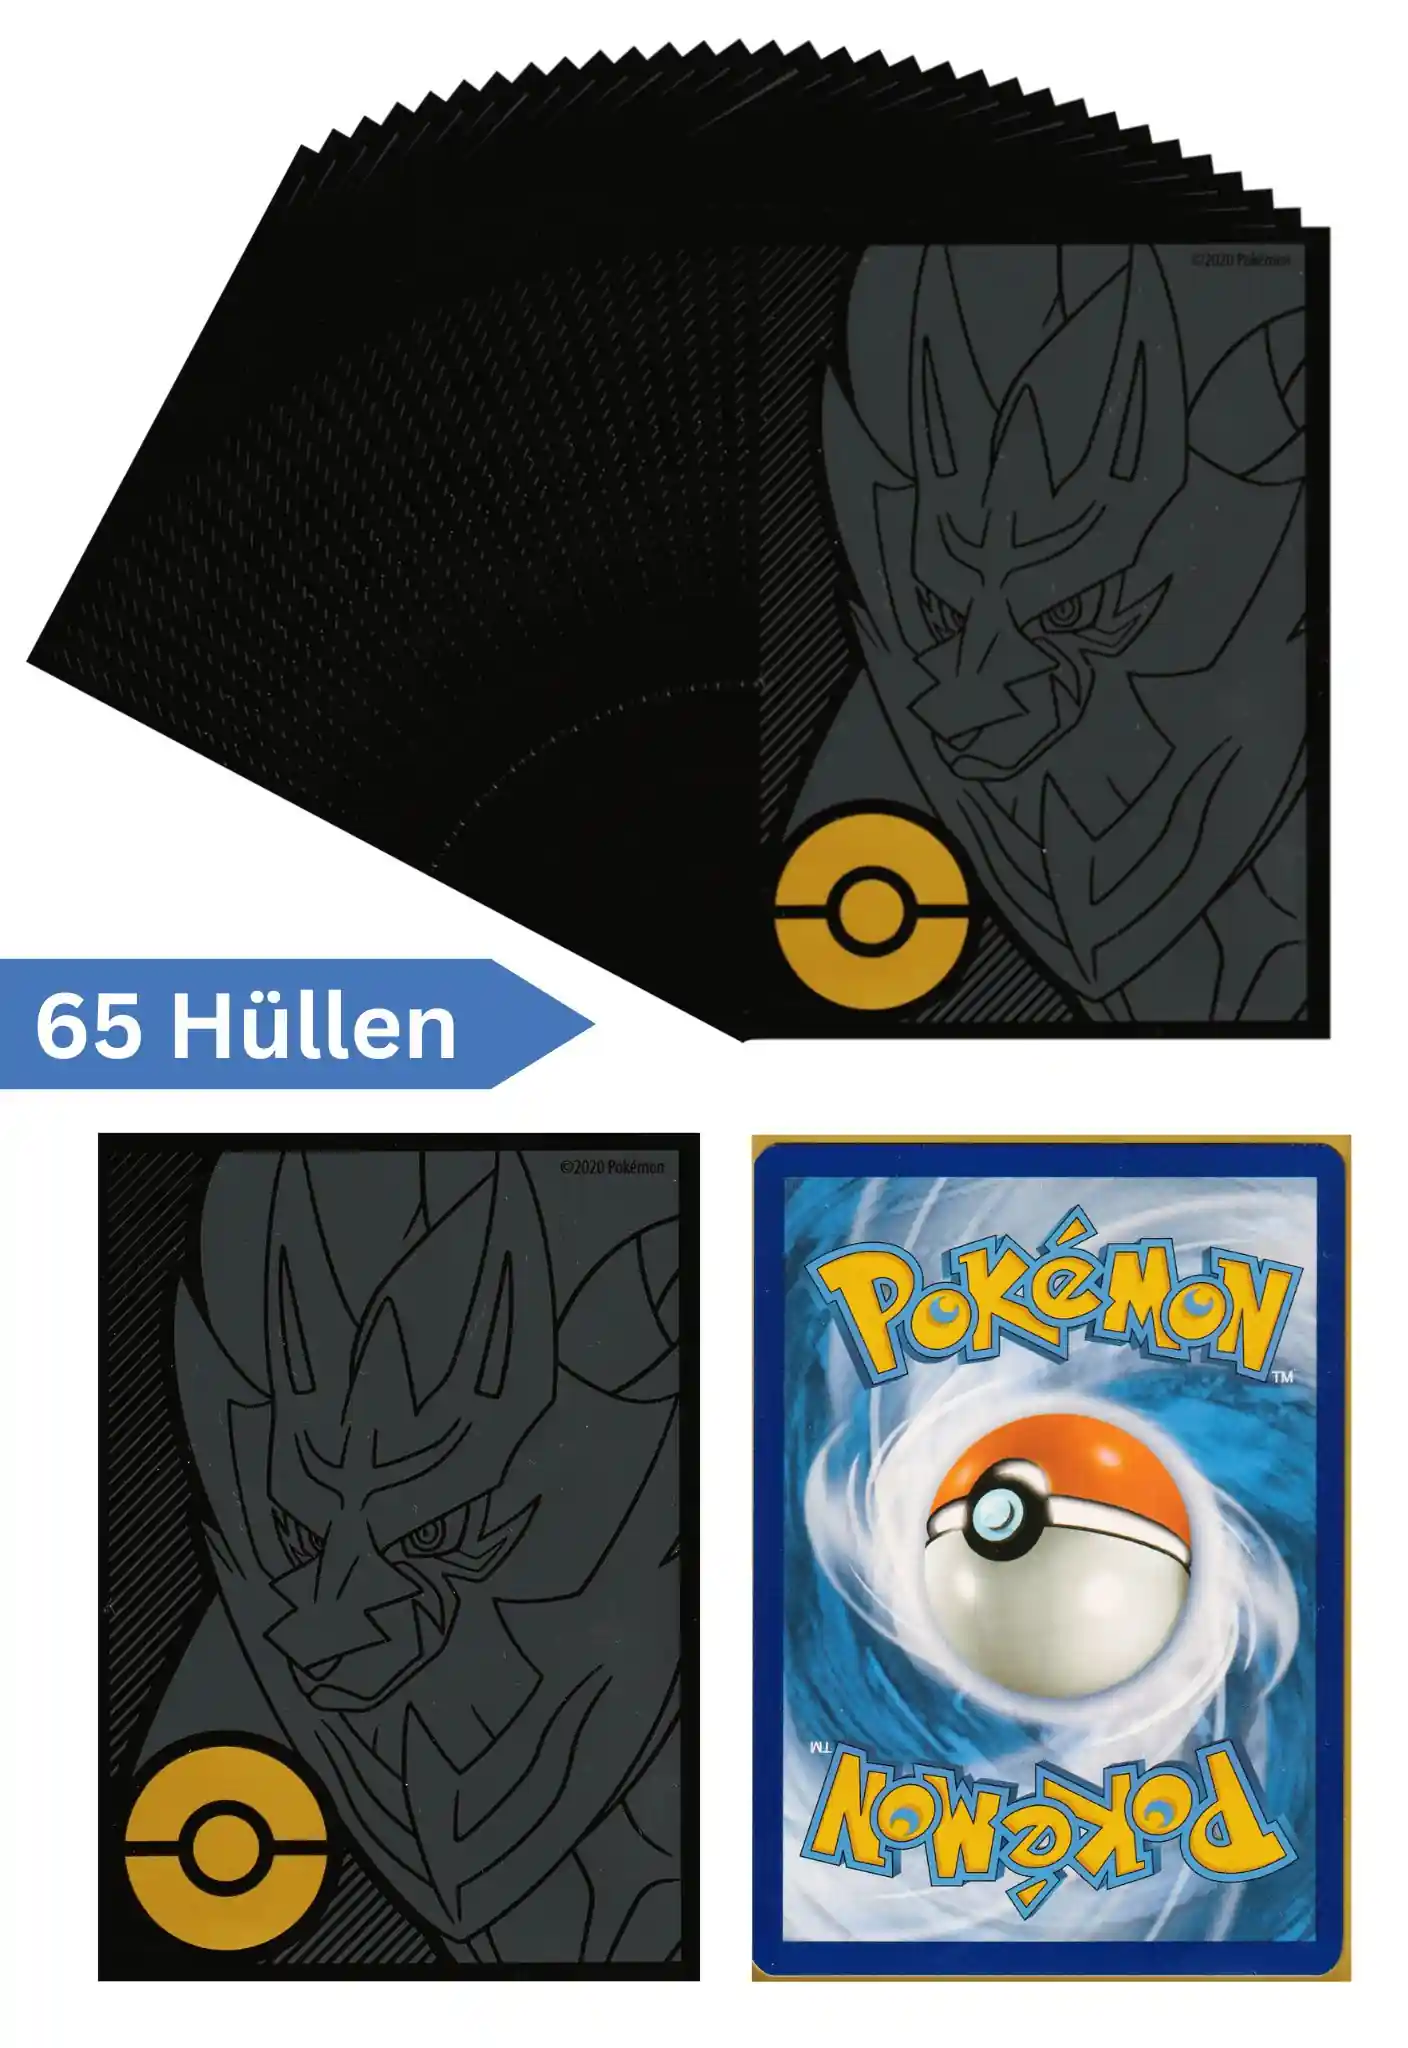 Pokemon Karten Schutzhüllen 65 Stück (Top Trainer Box Plus Zamazenta)